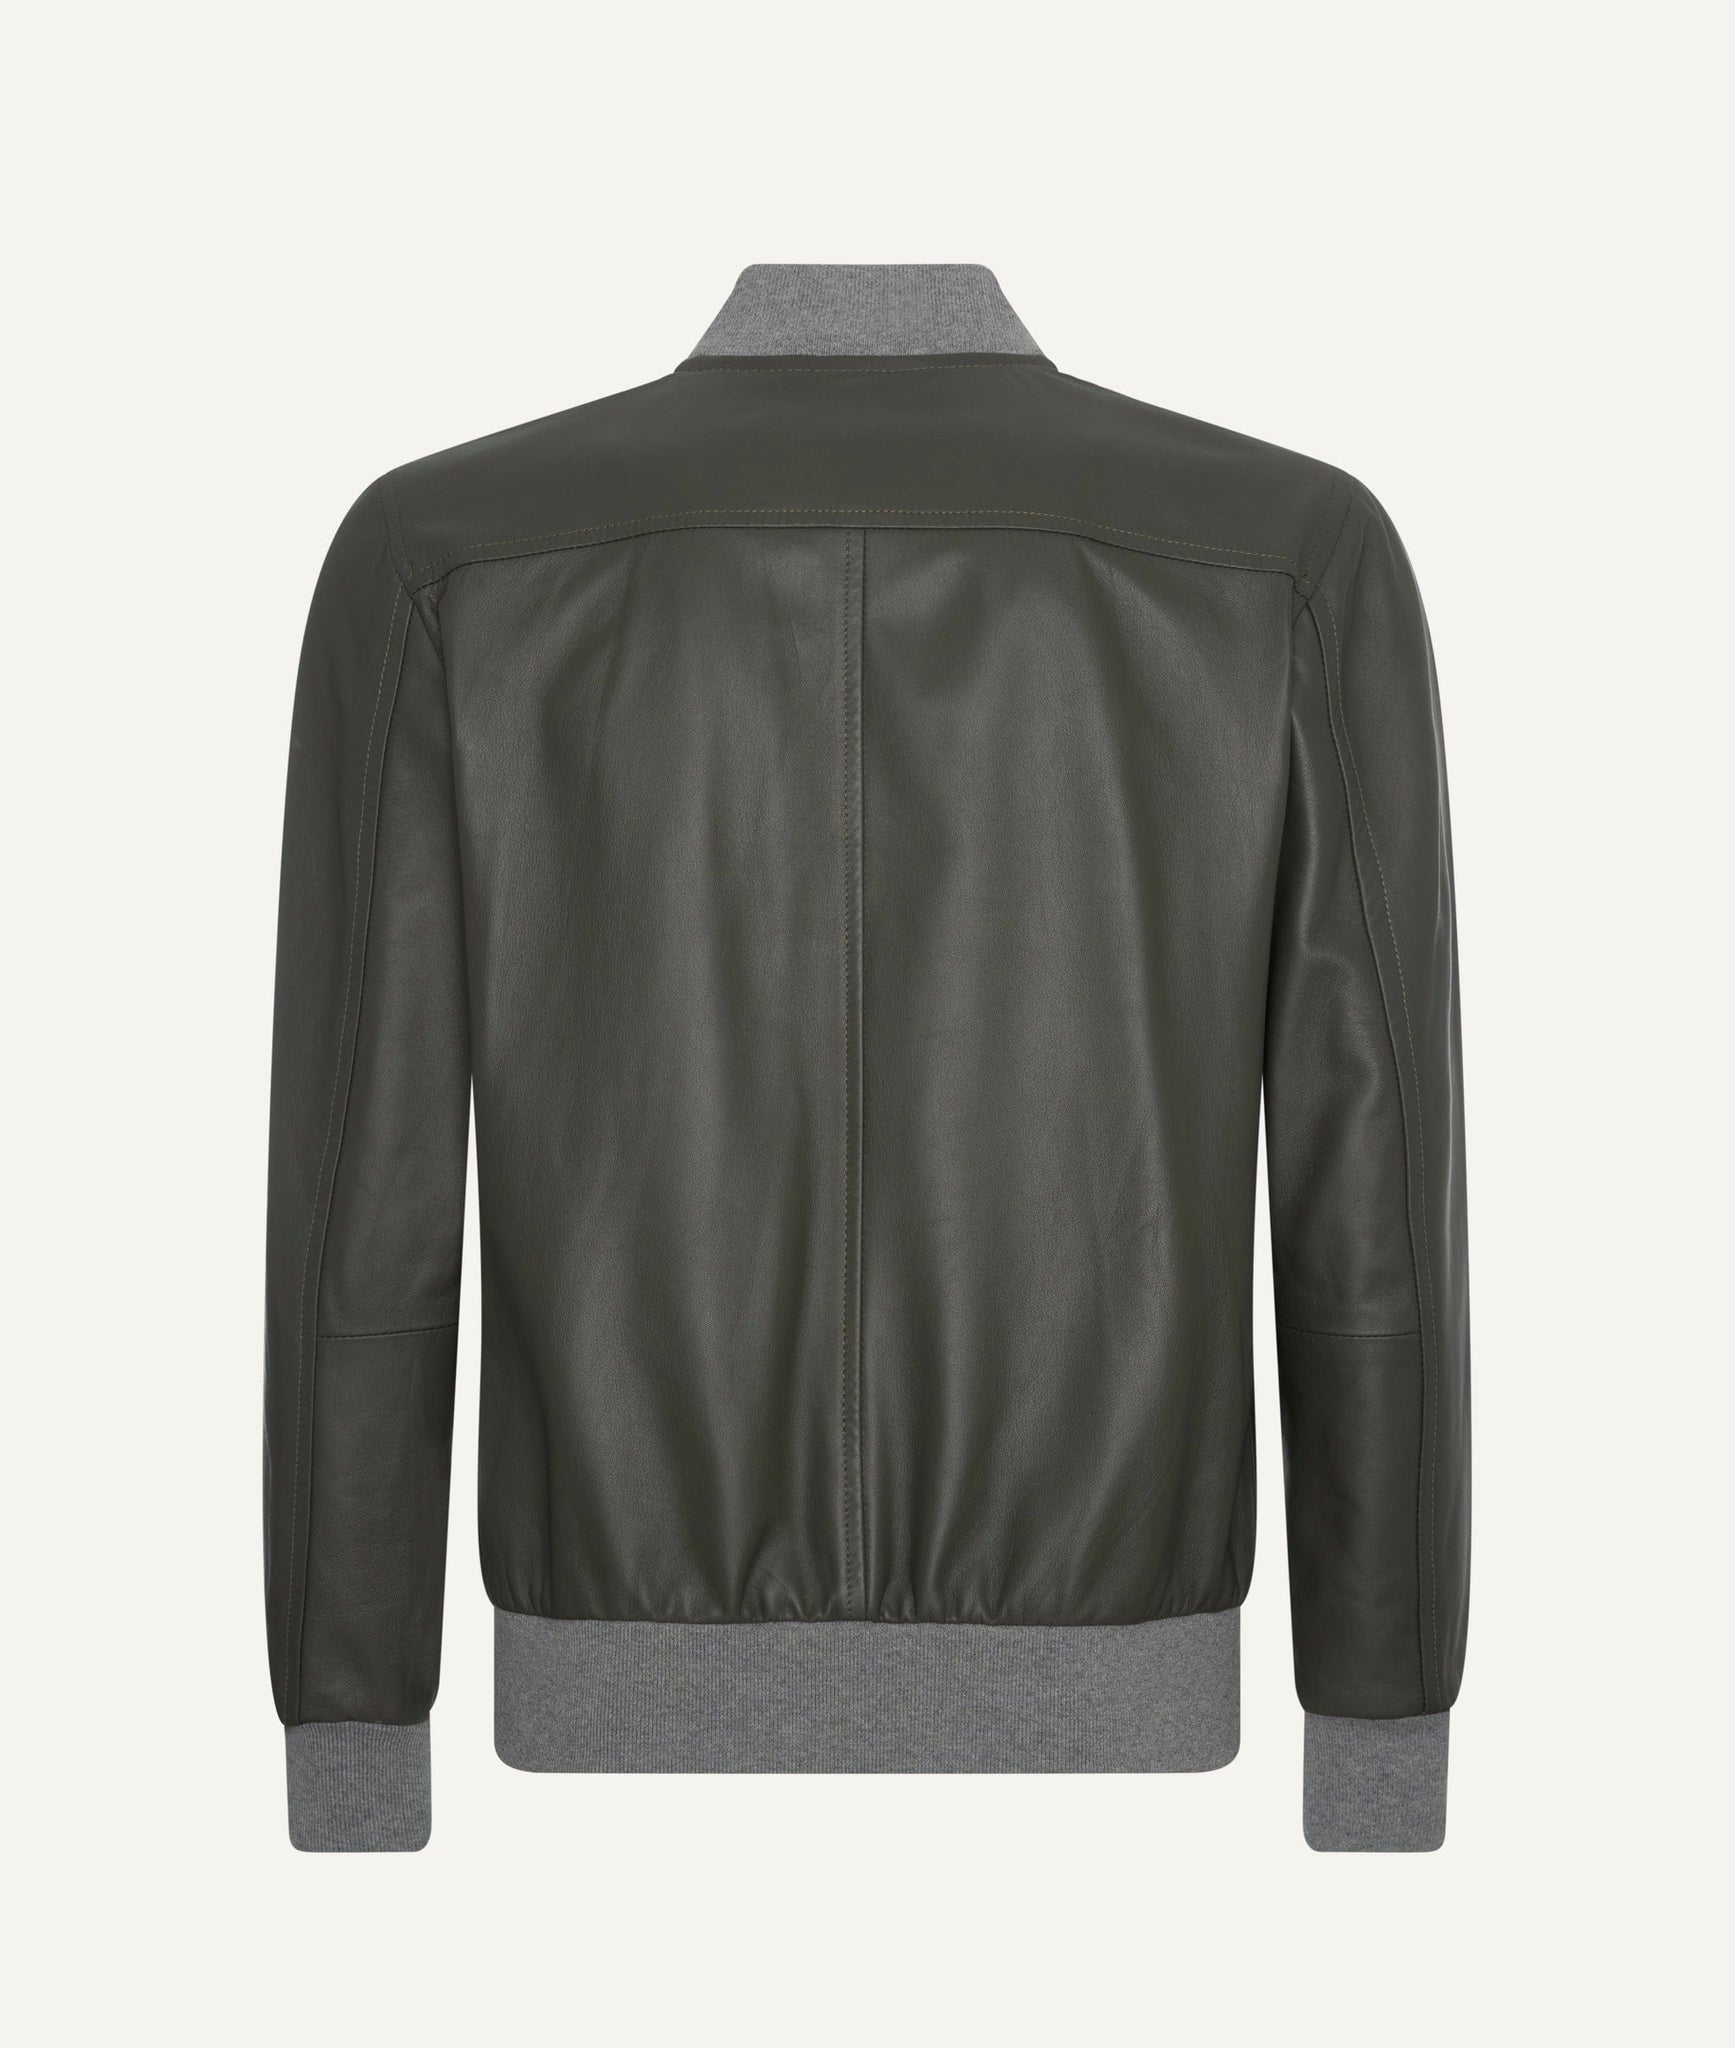 Eleventy - Leather Jacket in Lambskin